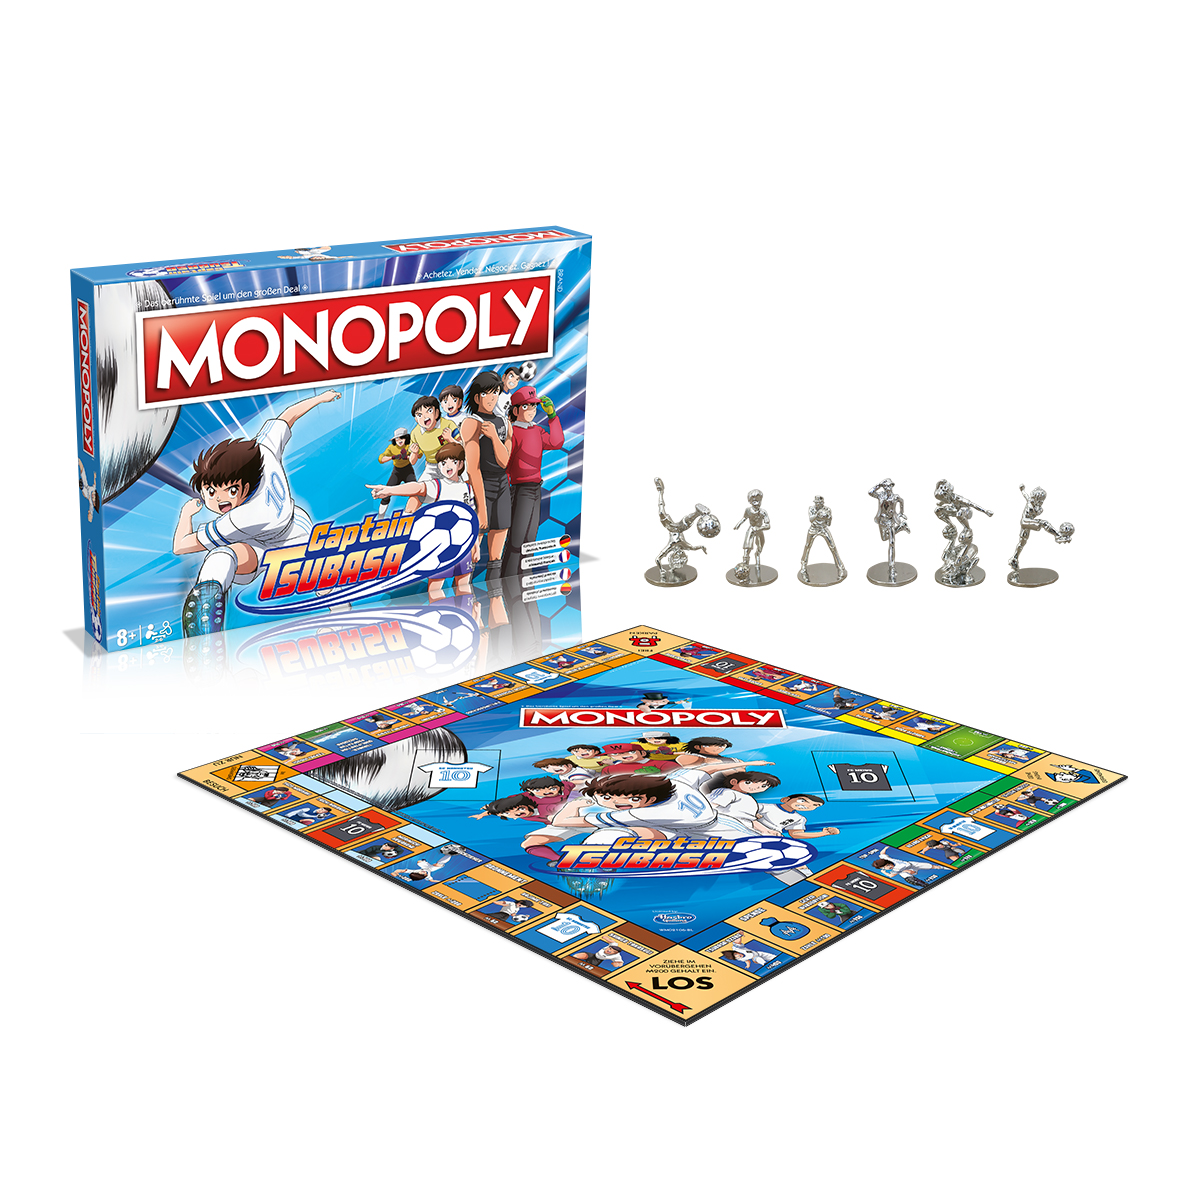 Monopoly - Captain Tsubasa (deutsch/französisch)